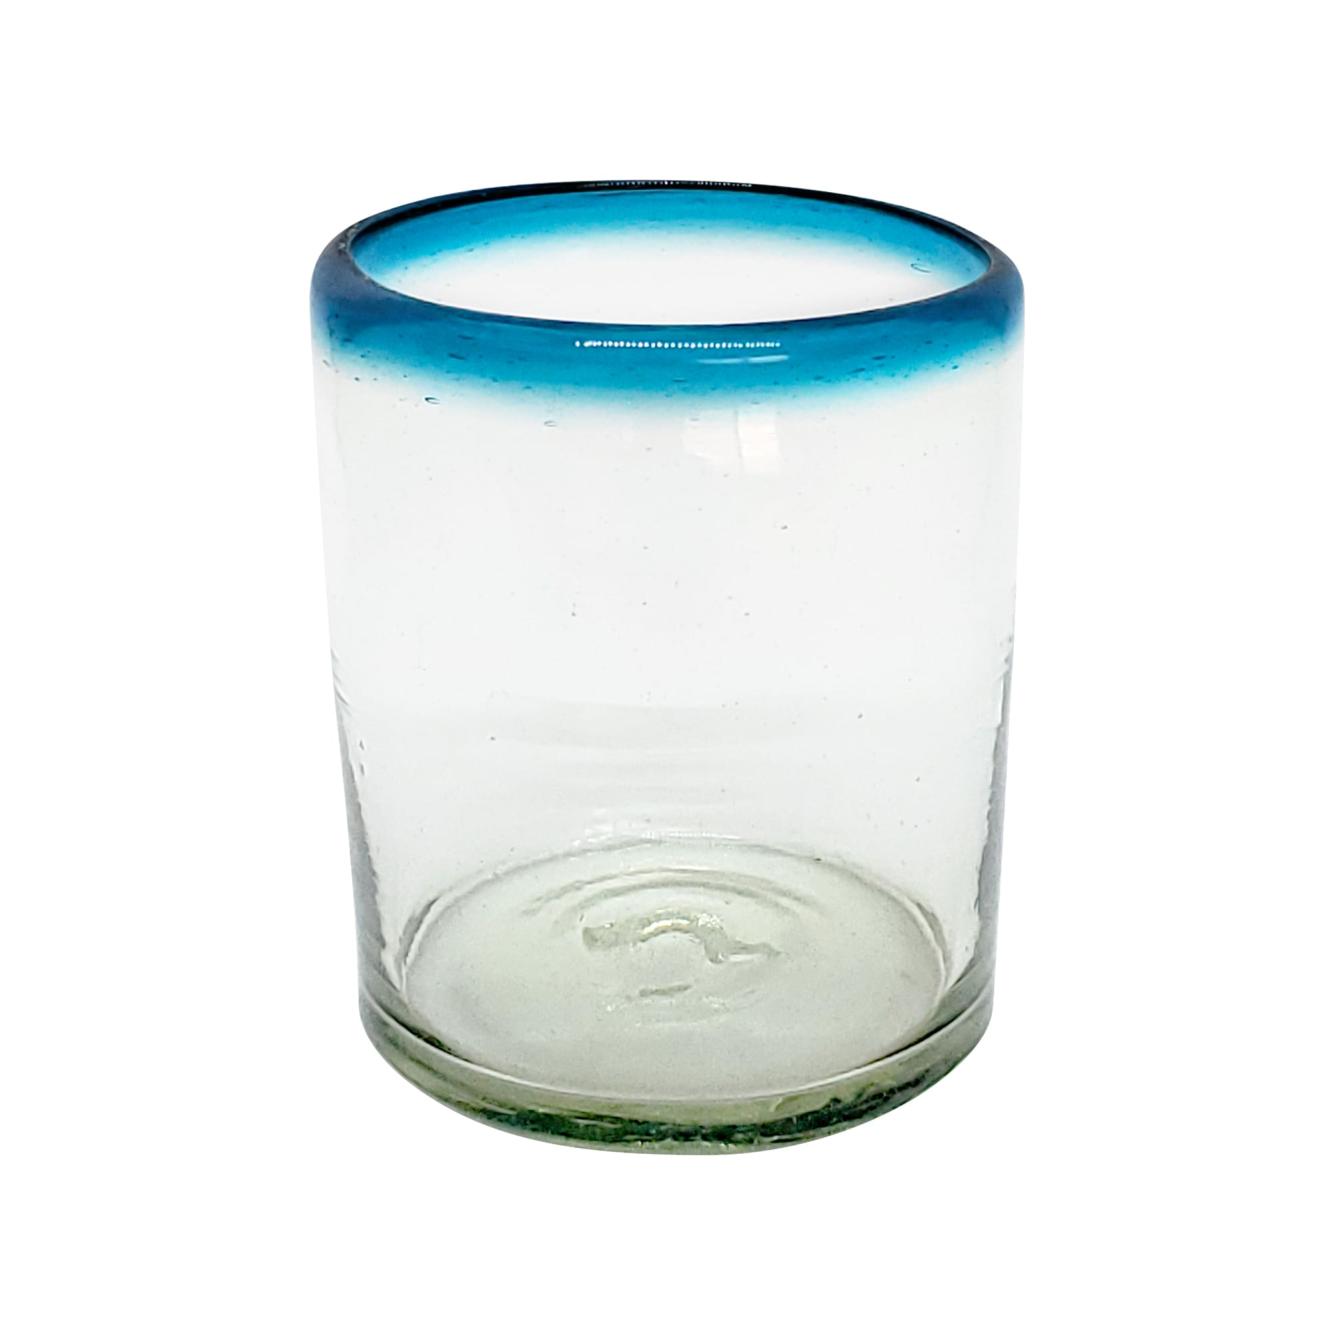 Novedades / vasos chicos con borde azul aqua, 10 oz, Vidrio Reciclado, Libre de Plomo y Toxinas / stos vasos chicos son un gran complemento para su juego de jarra y vasos grandes.